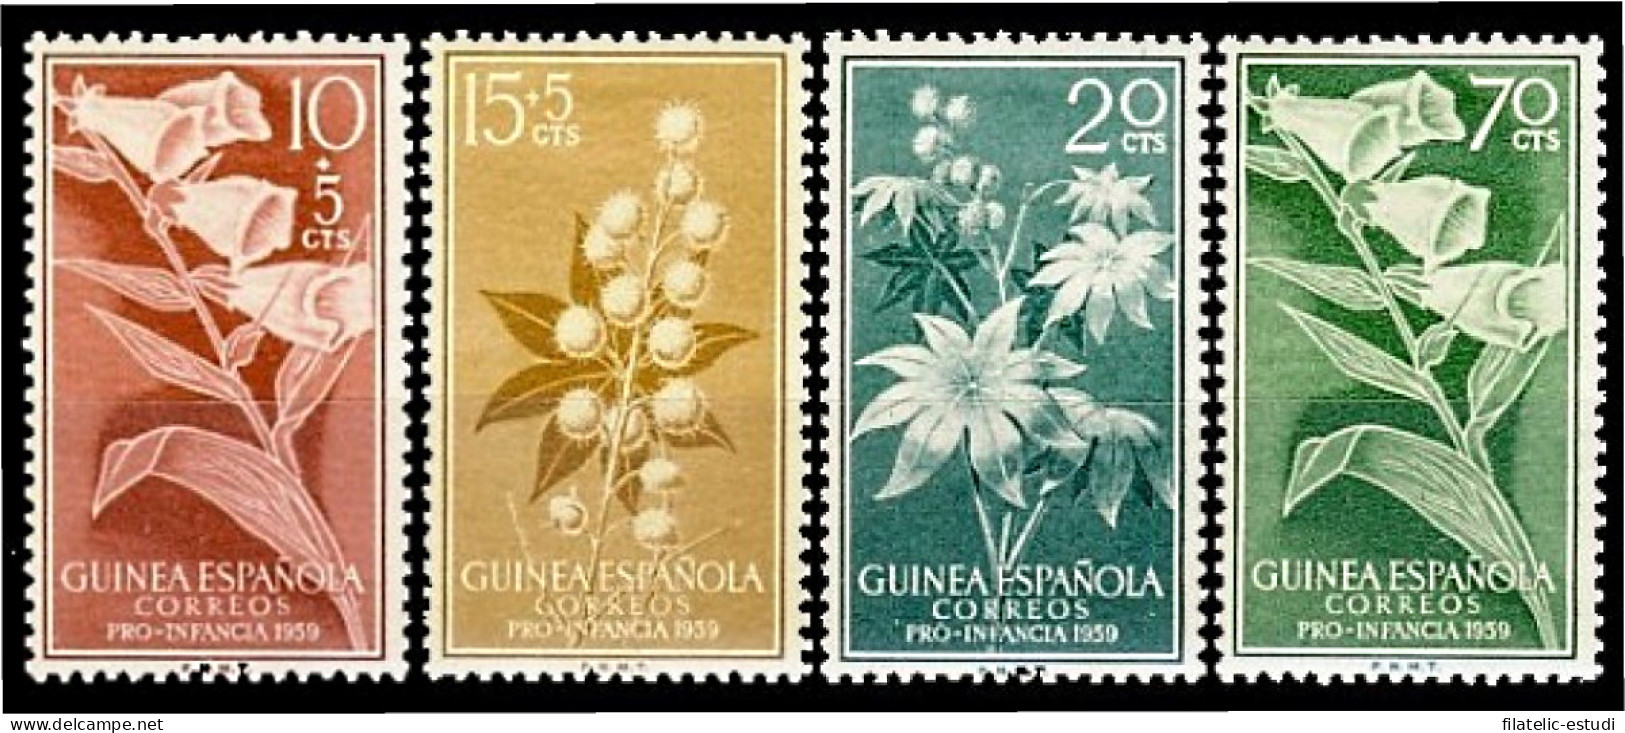 Guinea Española 391/94 1959 Pro Infancia Flora MNH - Guinea Espagnole